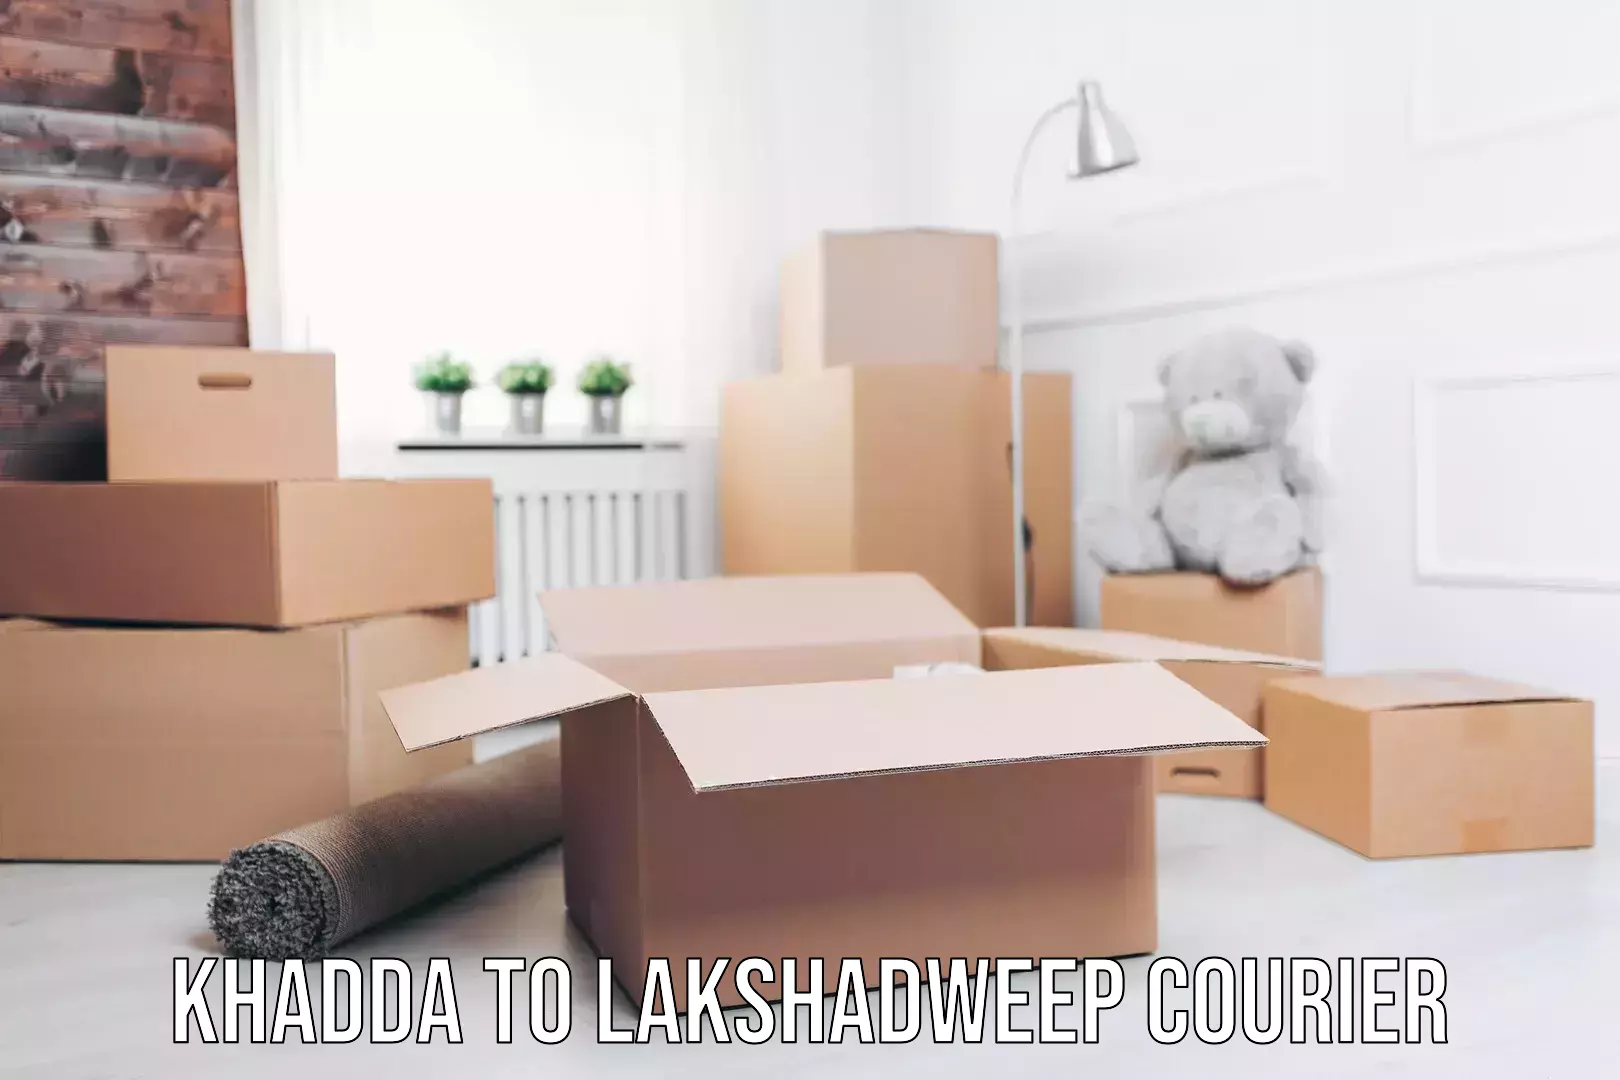 Nationwide moving services Khadda to Lakshadweep